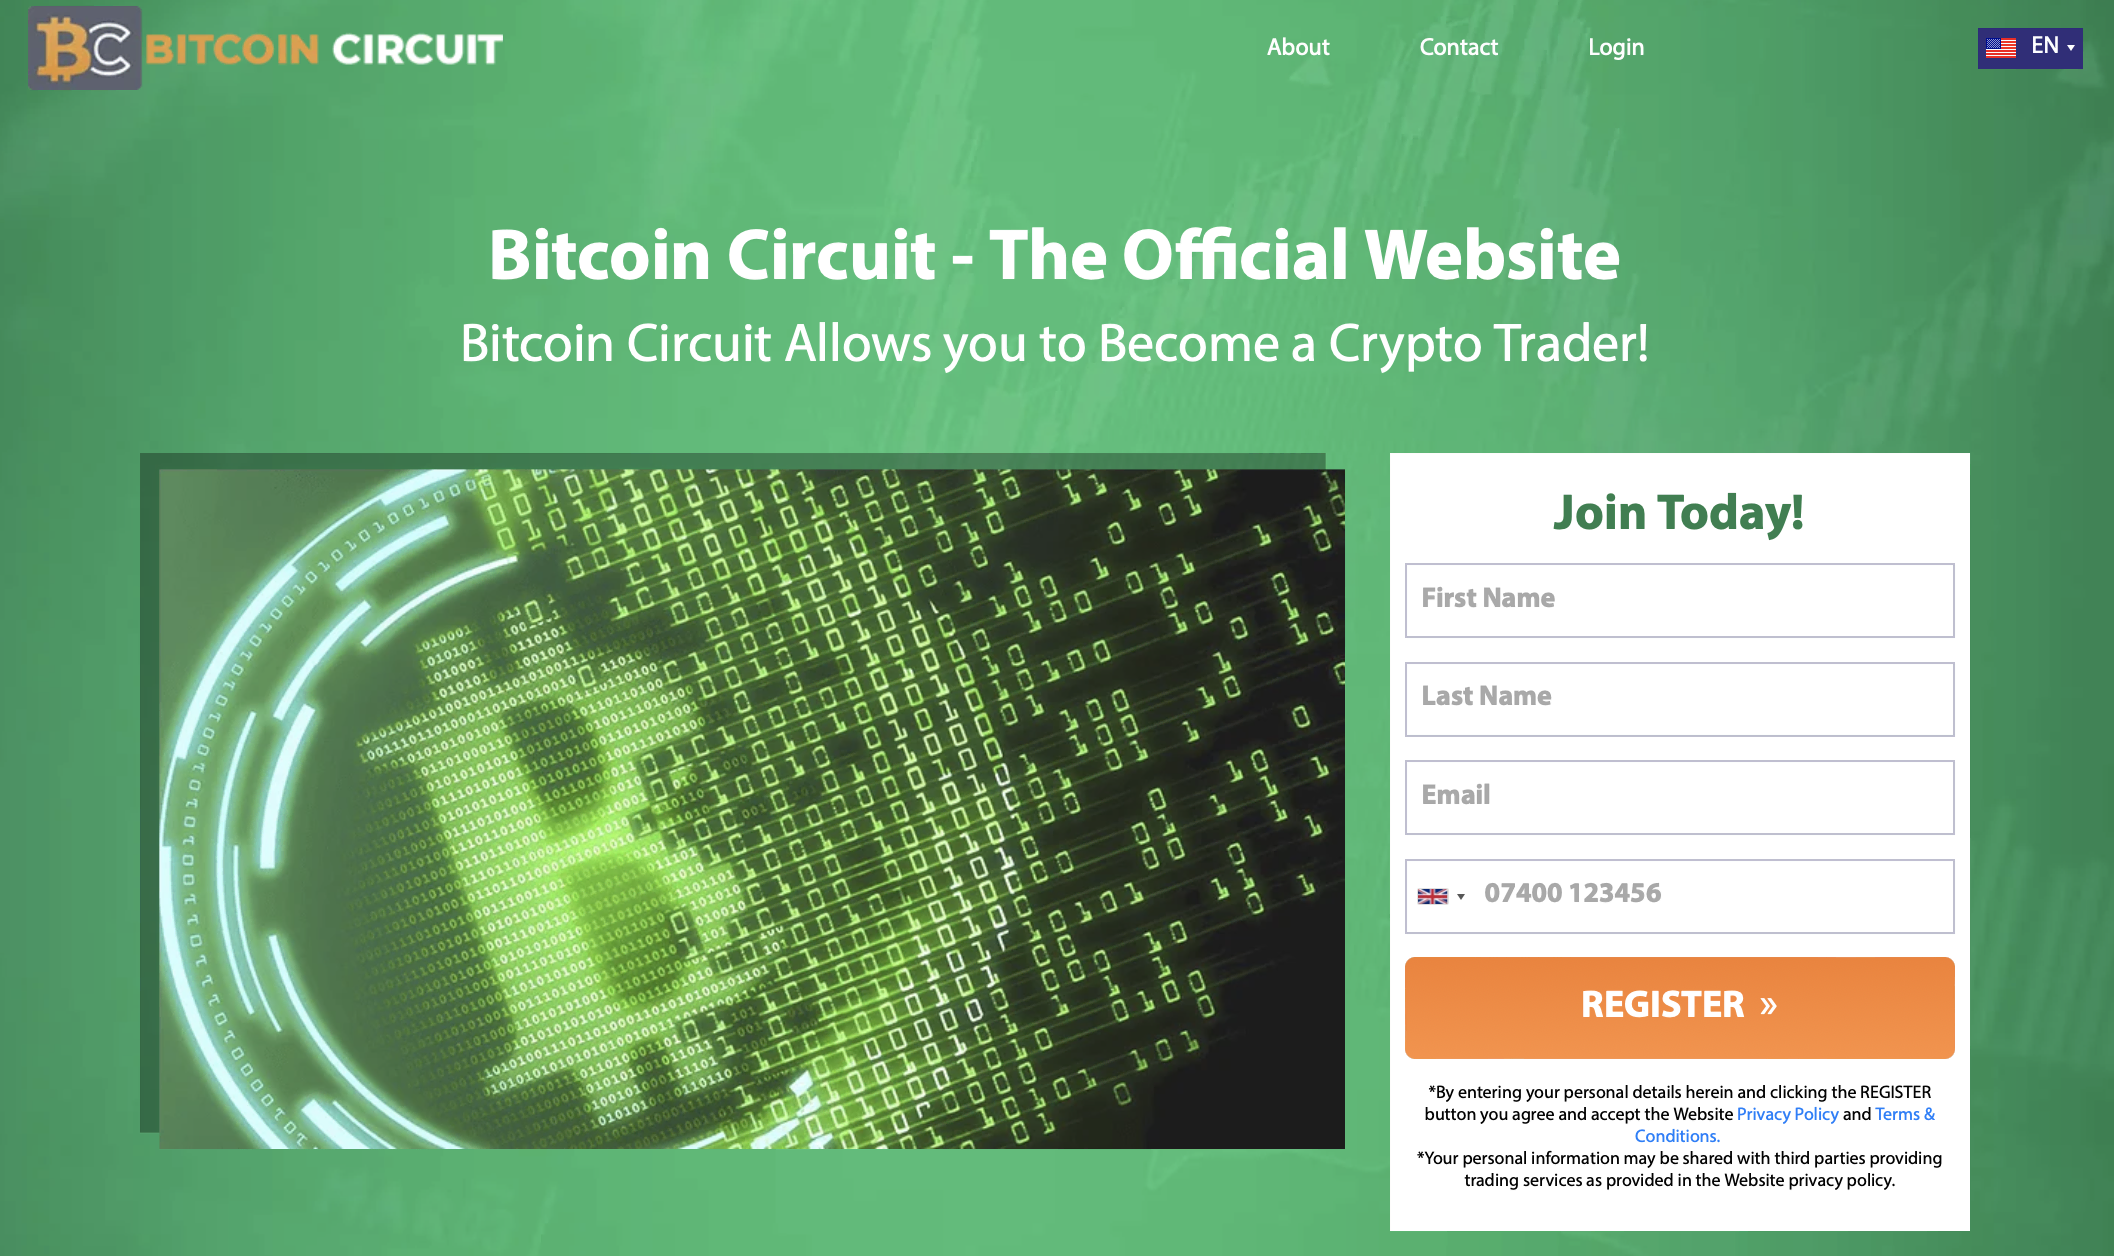 O site oficial do Bitcoin Circuit